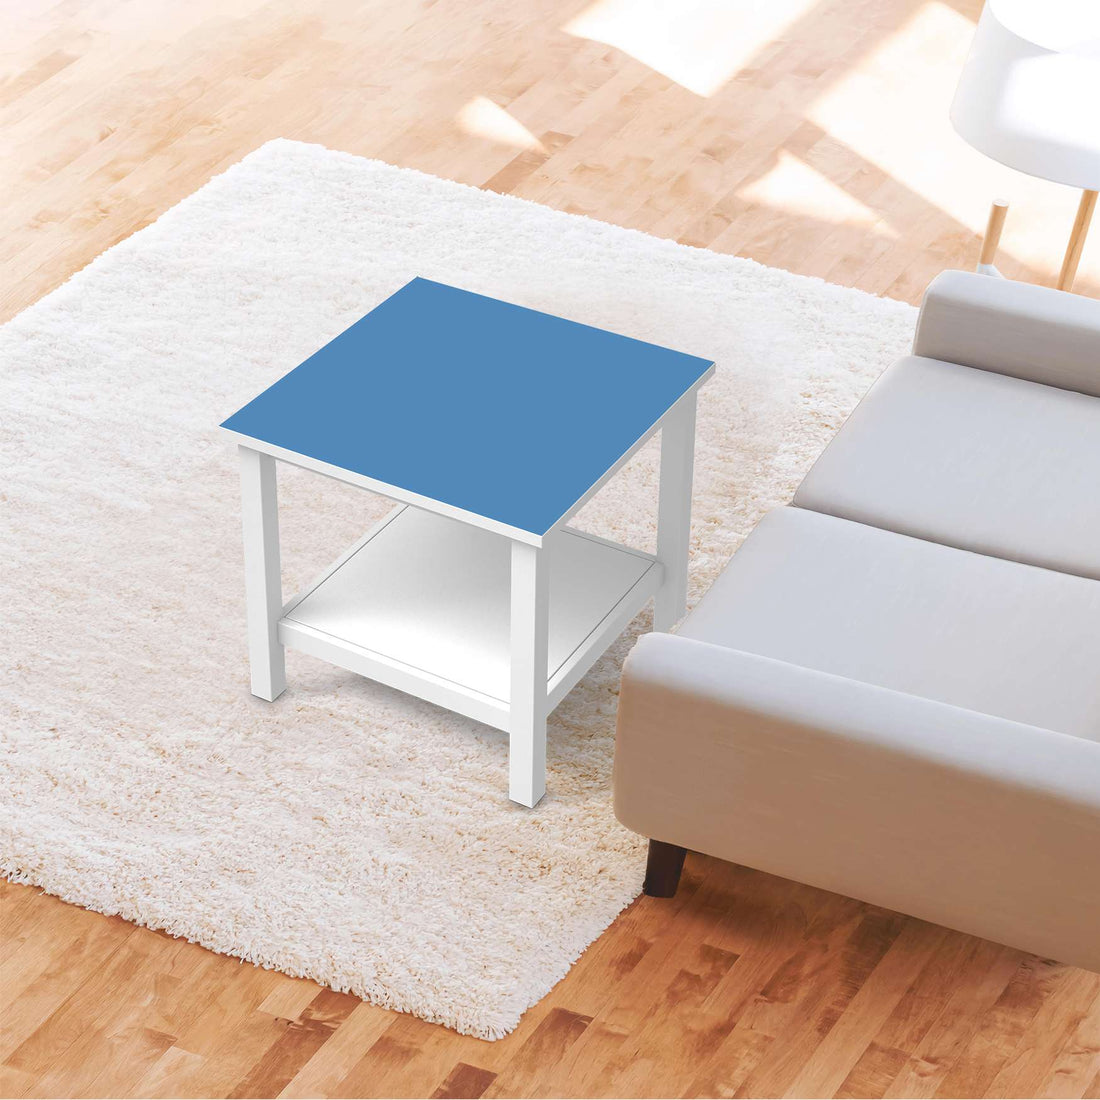 Möbel Klebefolie Blau Light - IKEA Hemnes Beistelltisch 55x55 cm - Wohnzimmer